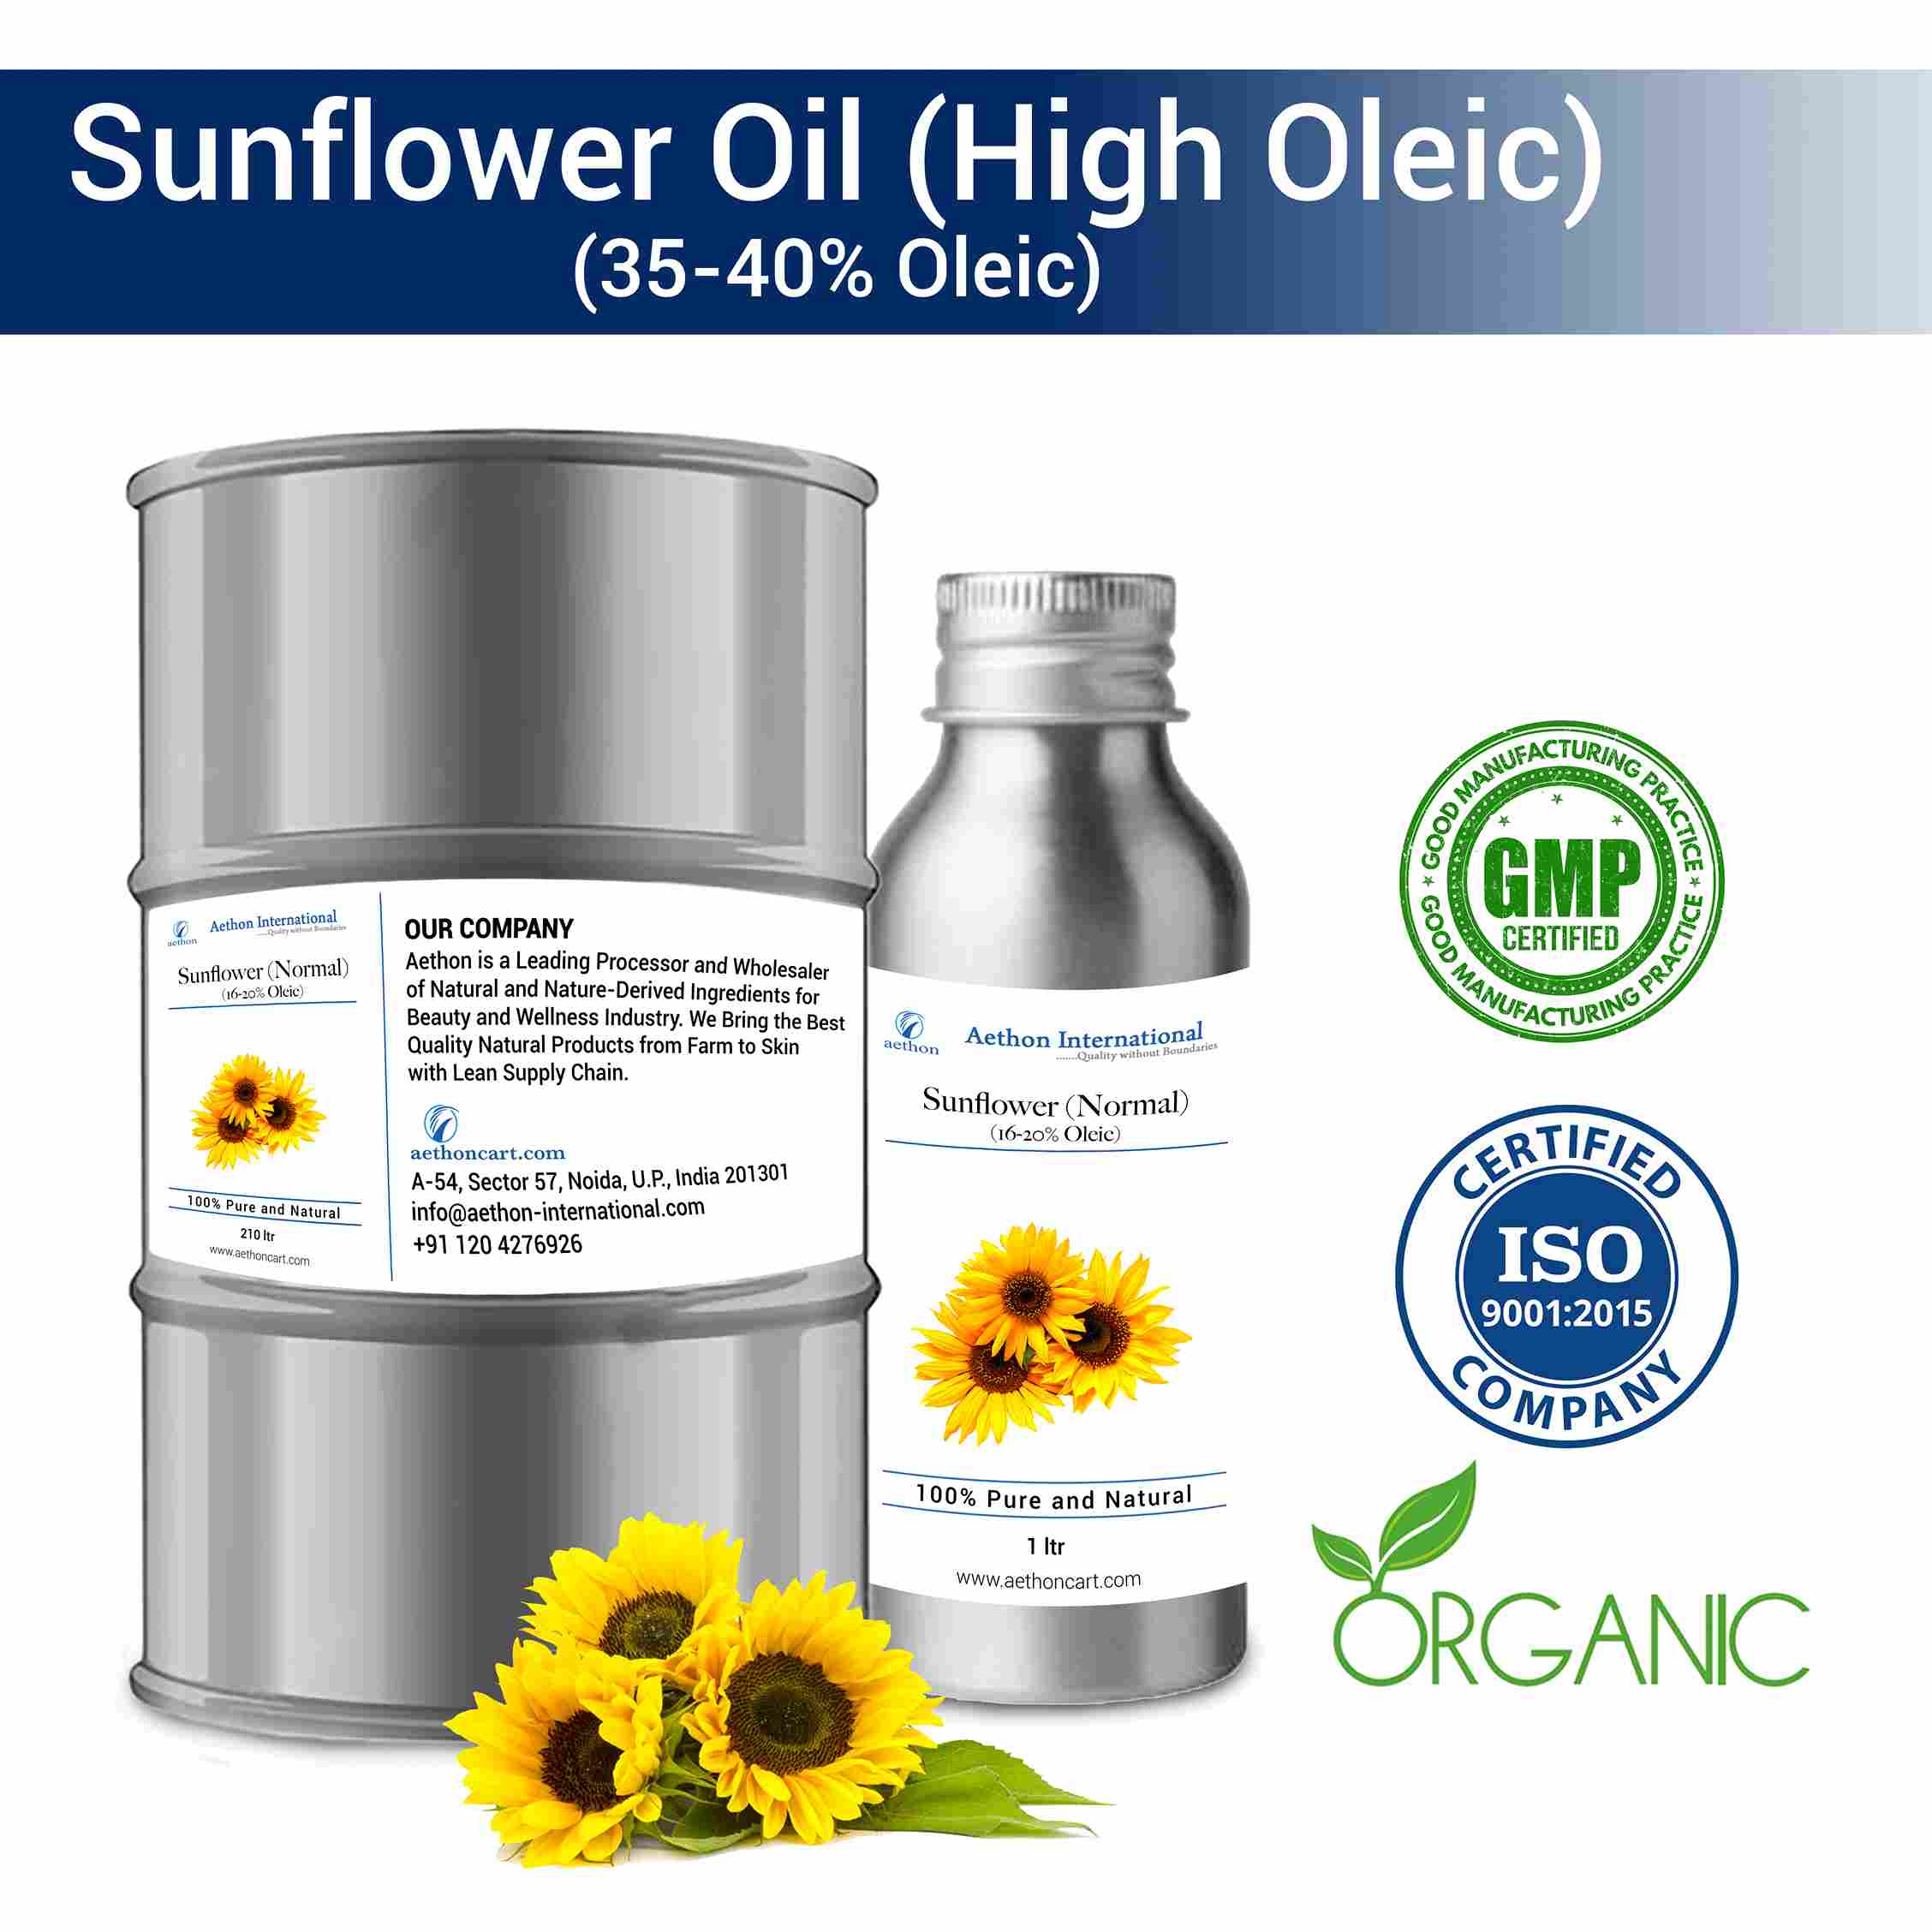 Sunflower Oil (High Oleic)